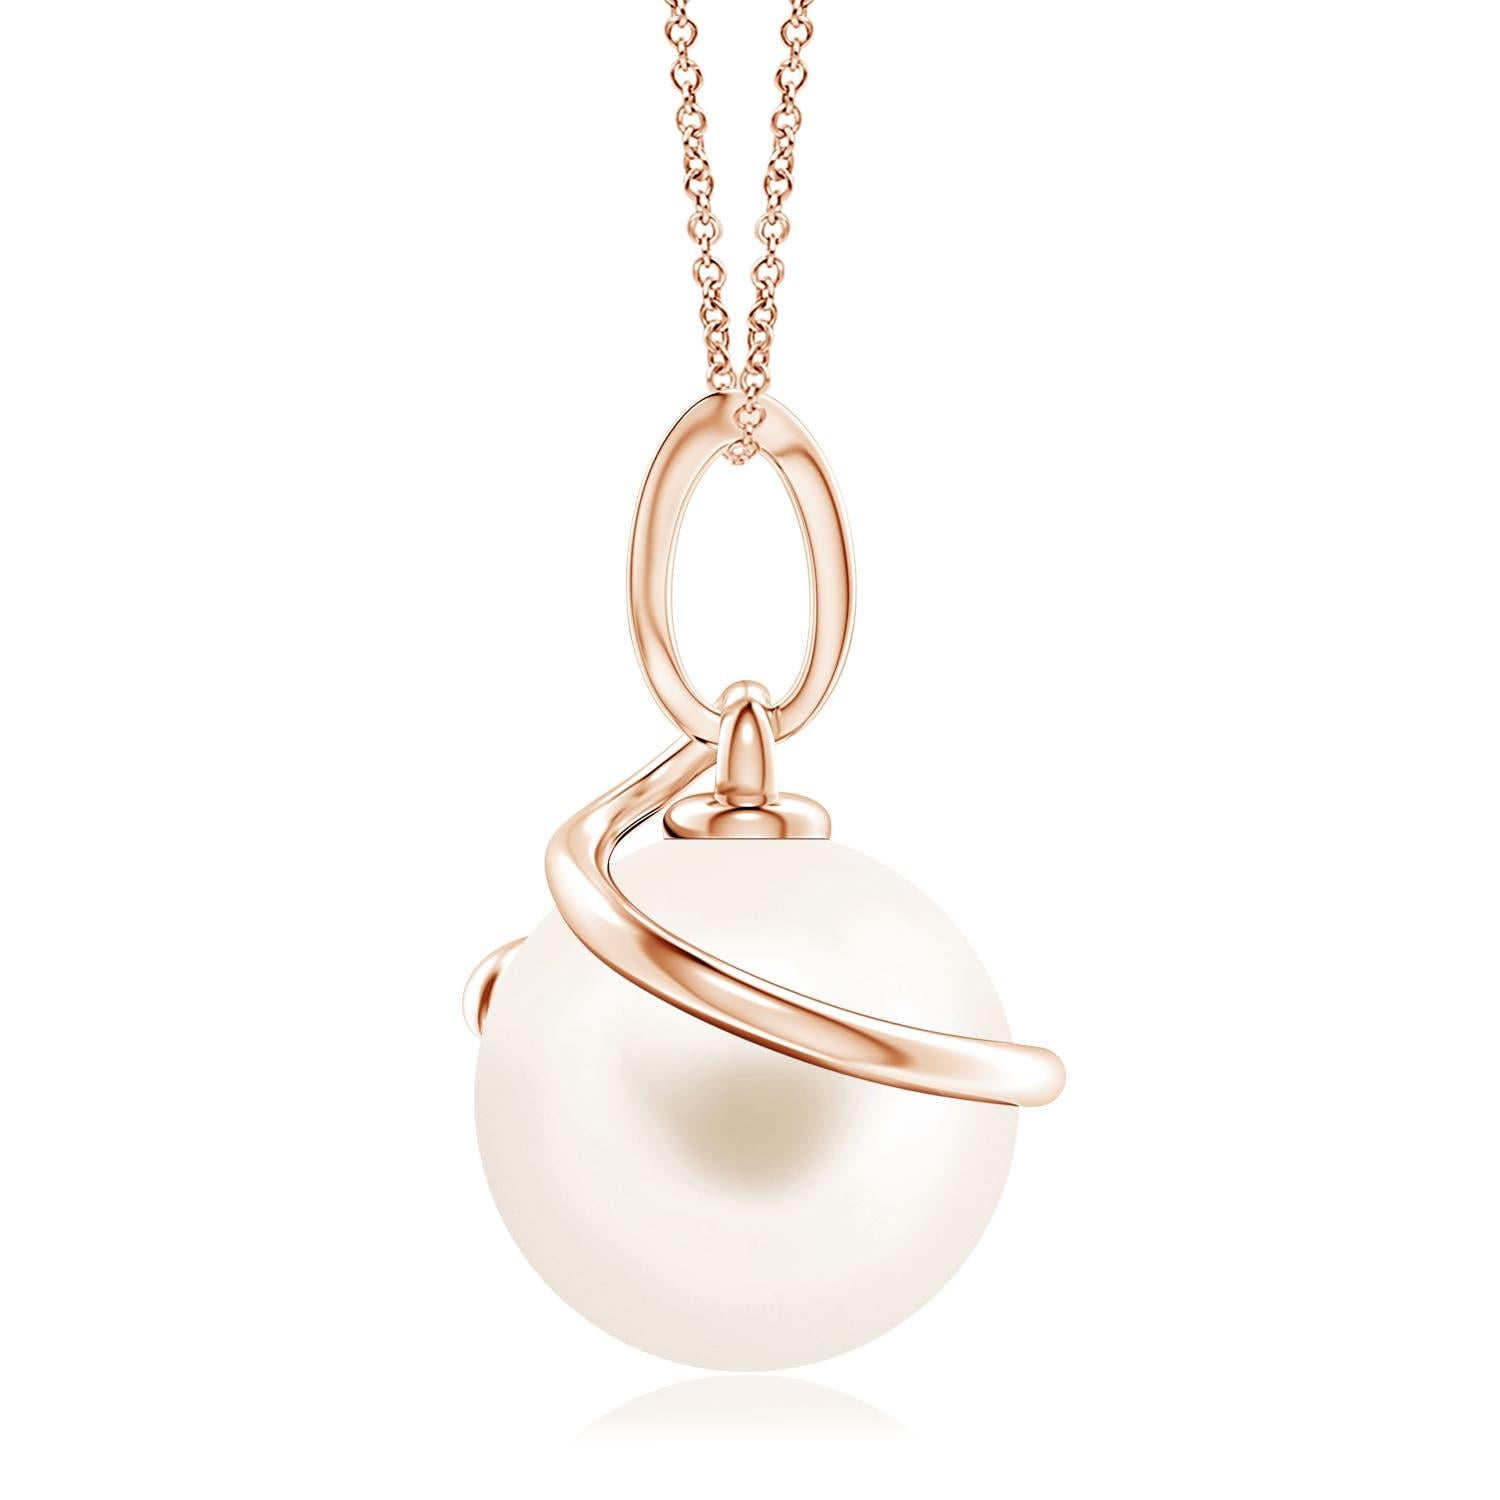 Donnez une touche d'élégance à vos looks avec ce pendentif en perles de culture d'eau douce, réalisé en or rose 14k. La magnifique perle est entourée d'une boucle métallique en spirale et reliée à une balle sertie de diamants.
La perle de culture